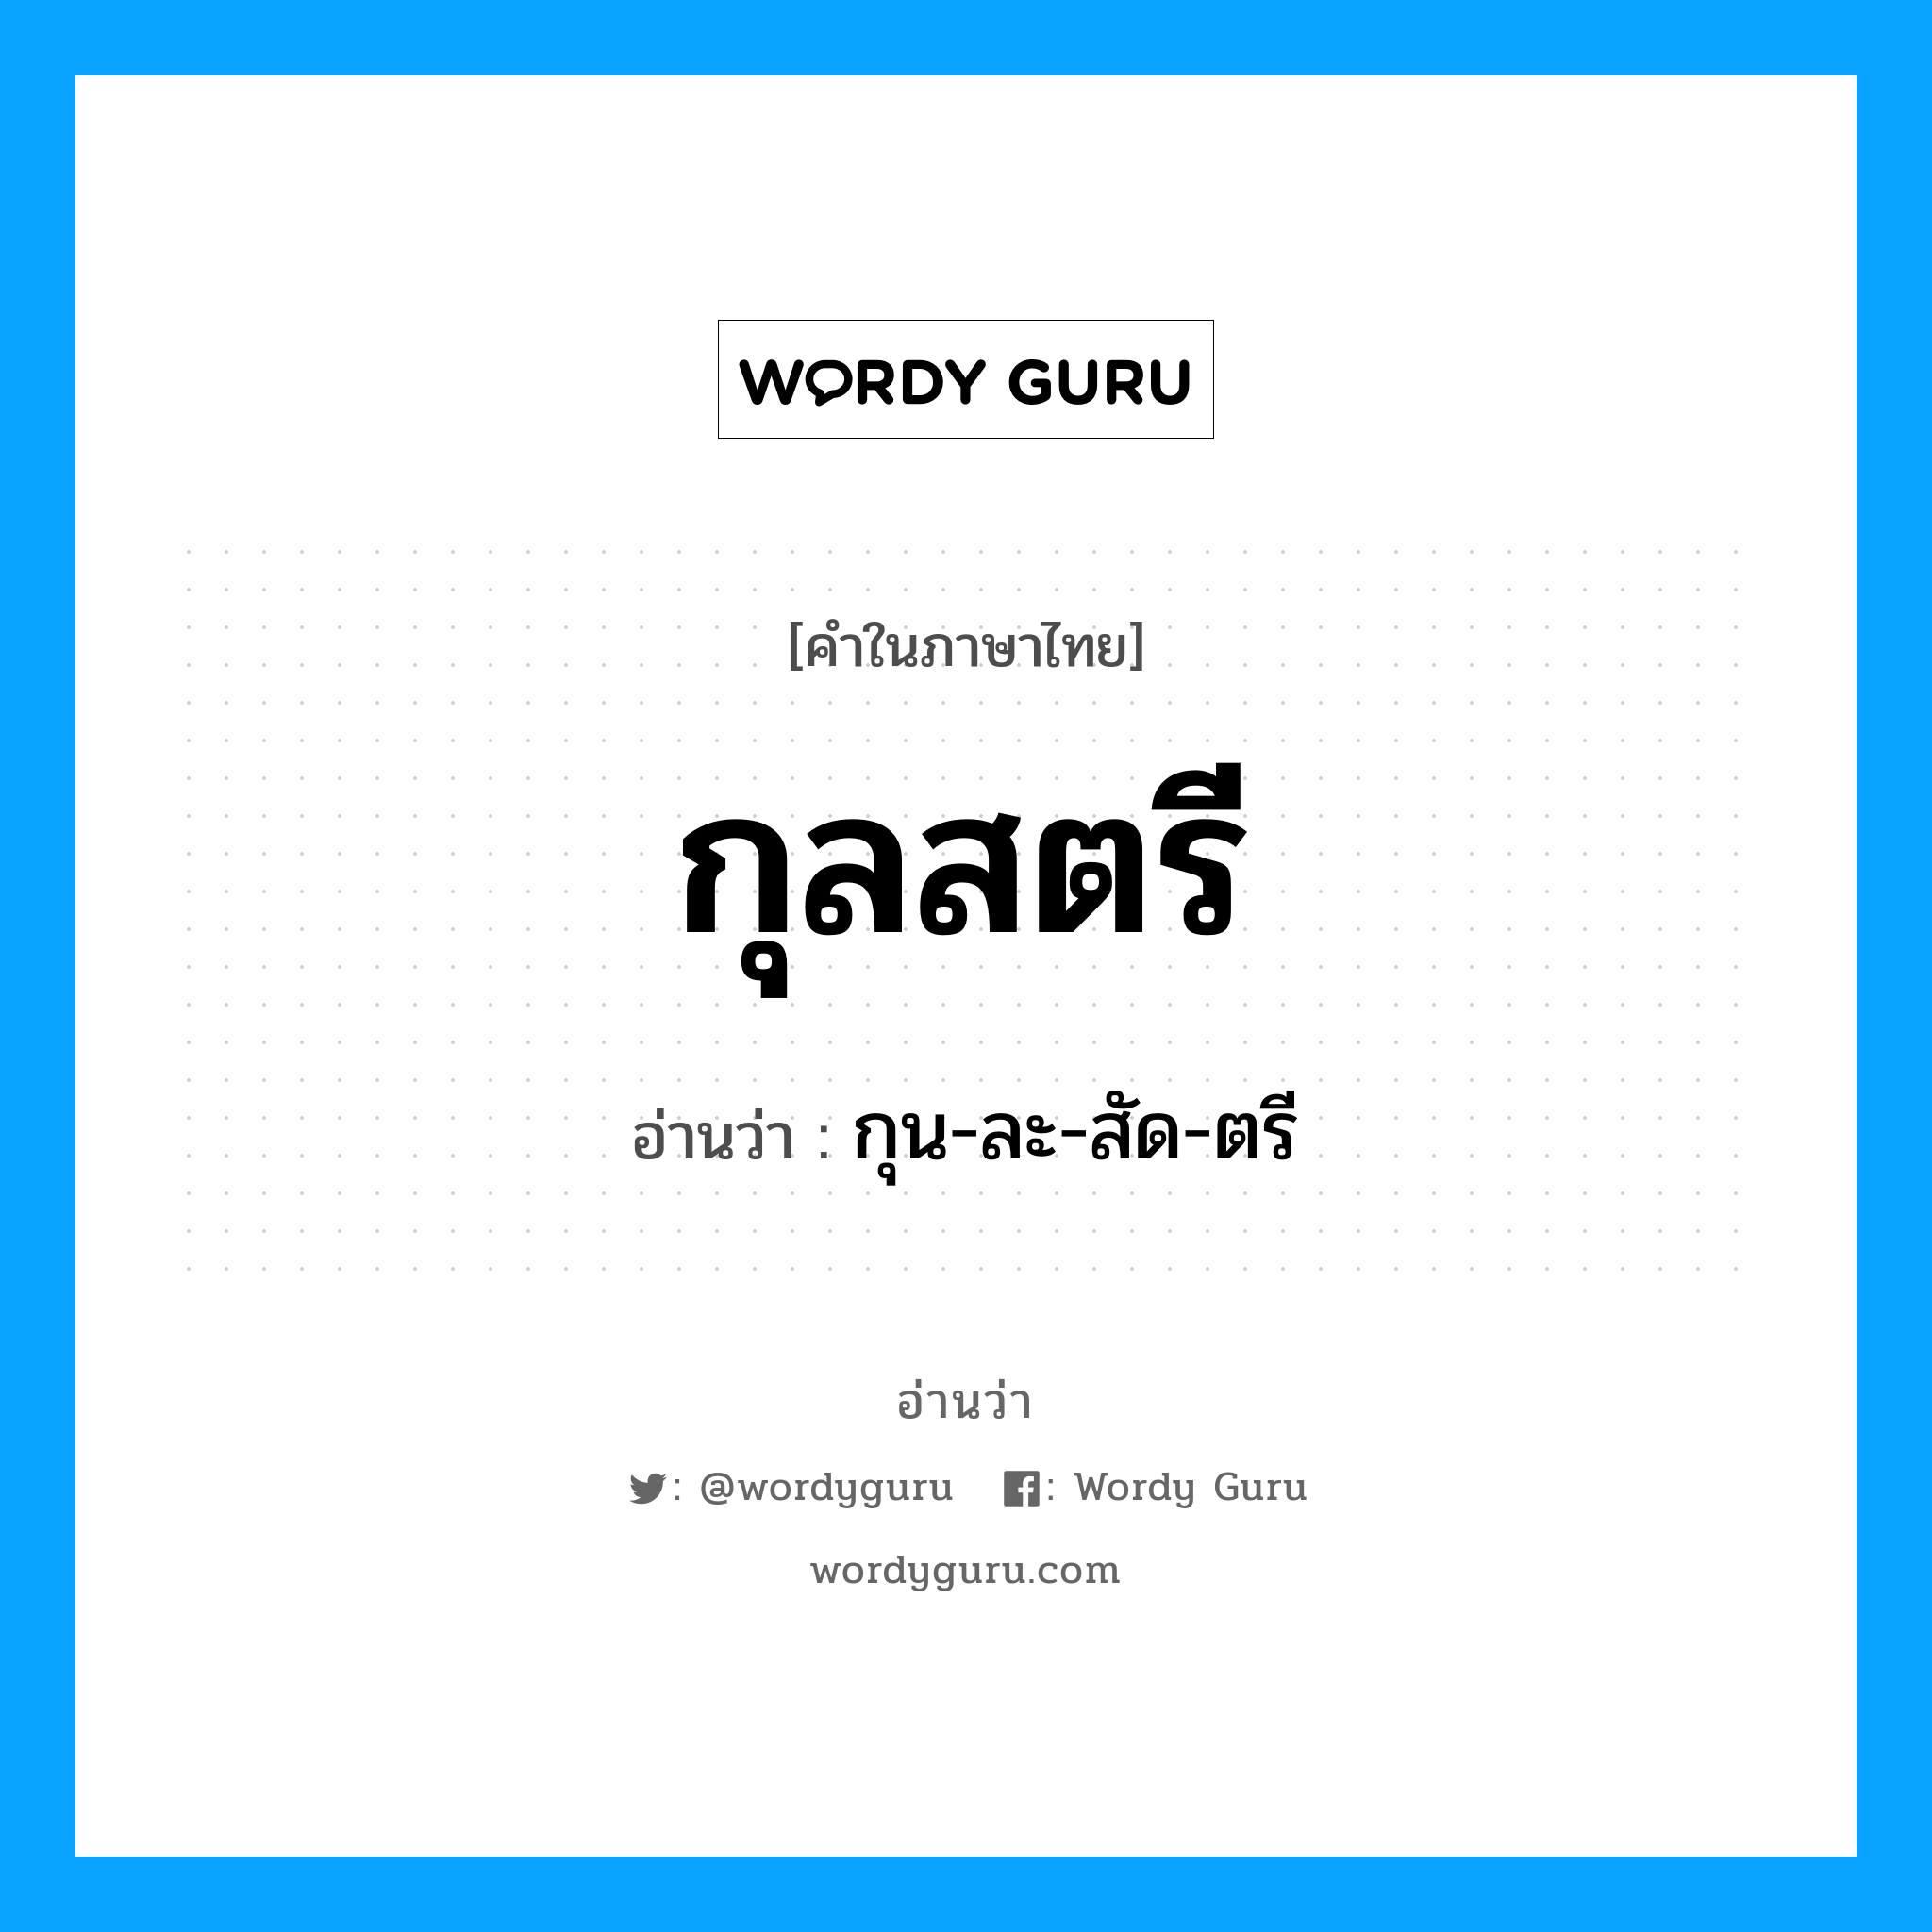 กุน-ละ-สัด-ตรี เป็นคำอ่านของคำไหน?, คำในภาษาไทย กุน-ละ-สัด-ตรี อ่านว่า กุลสตรี